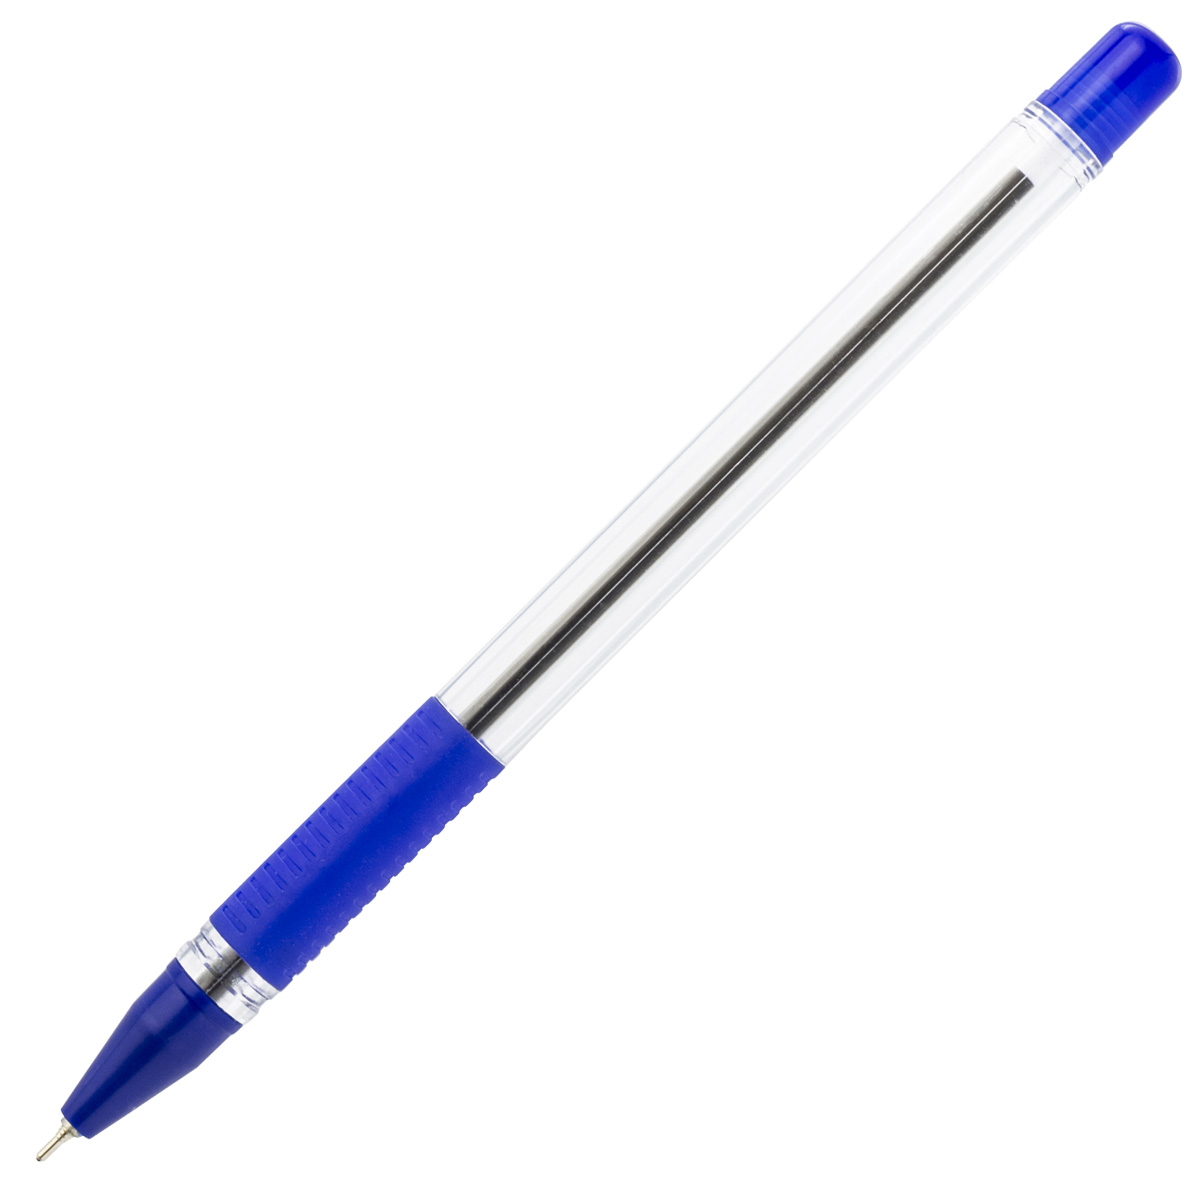 Ручка с прозрачным корпусом. Ручка Index шариковая ibp801/bu синяя. Ручка гелевая calligraph, прозрачный корпус, синяя, 0,5мм ,Index. Ручка шариковая Index ibp812. Ручка Index ibp602/bu синяя.